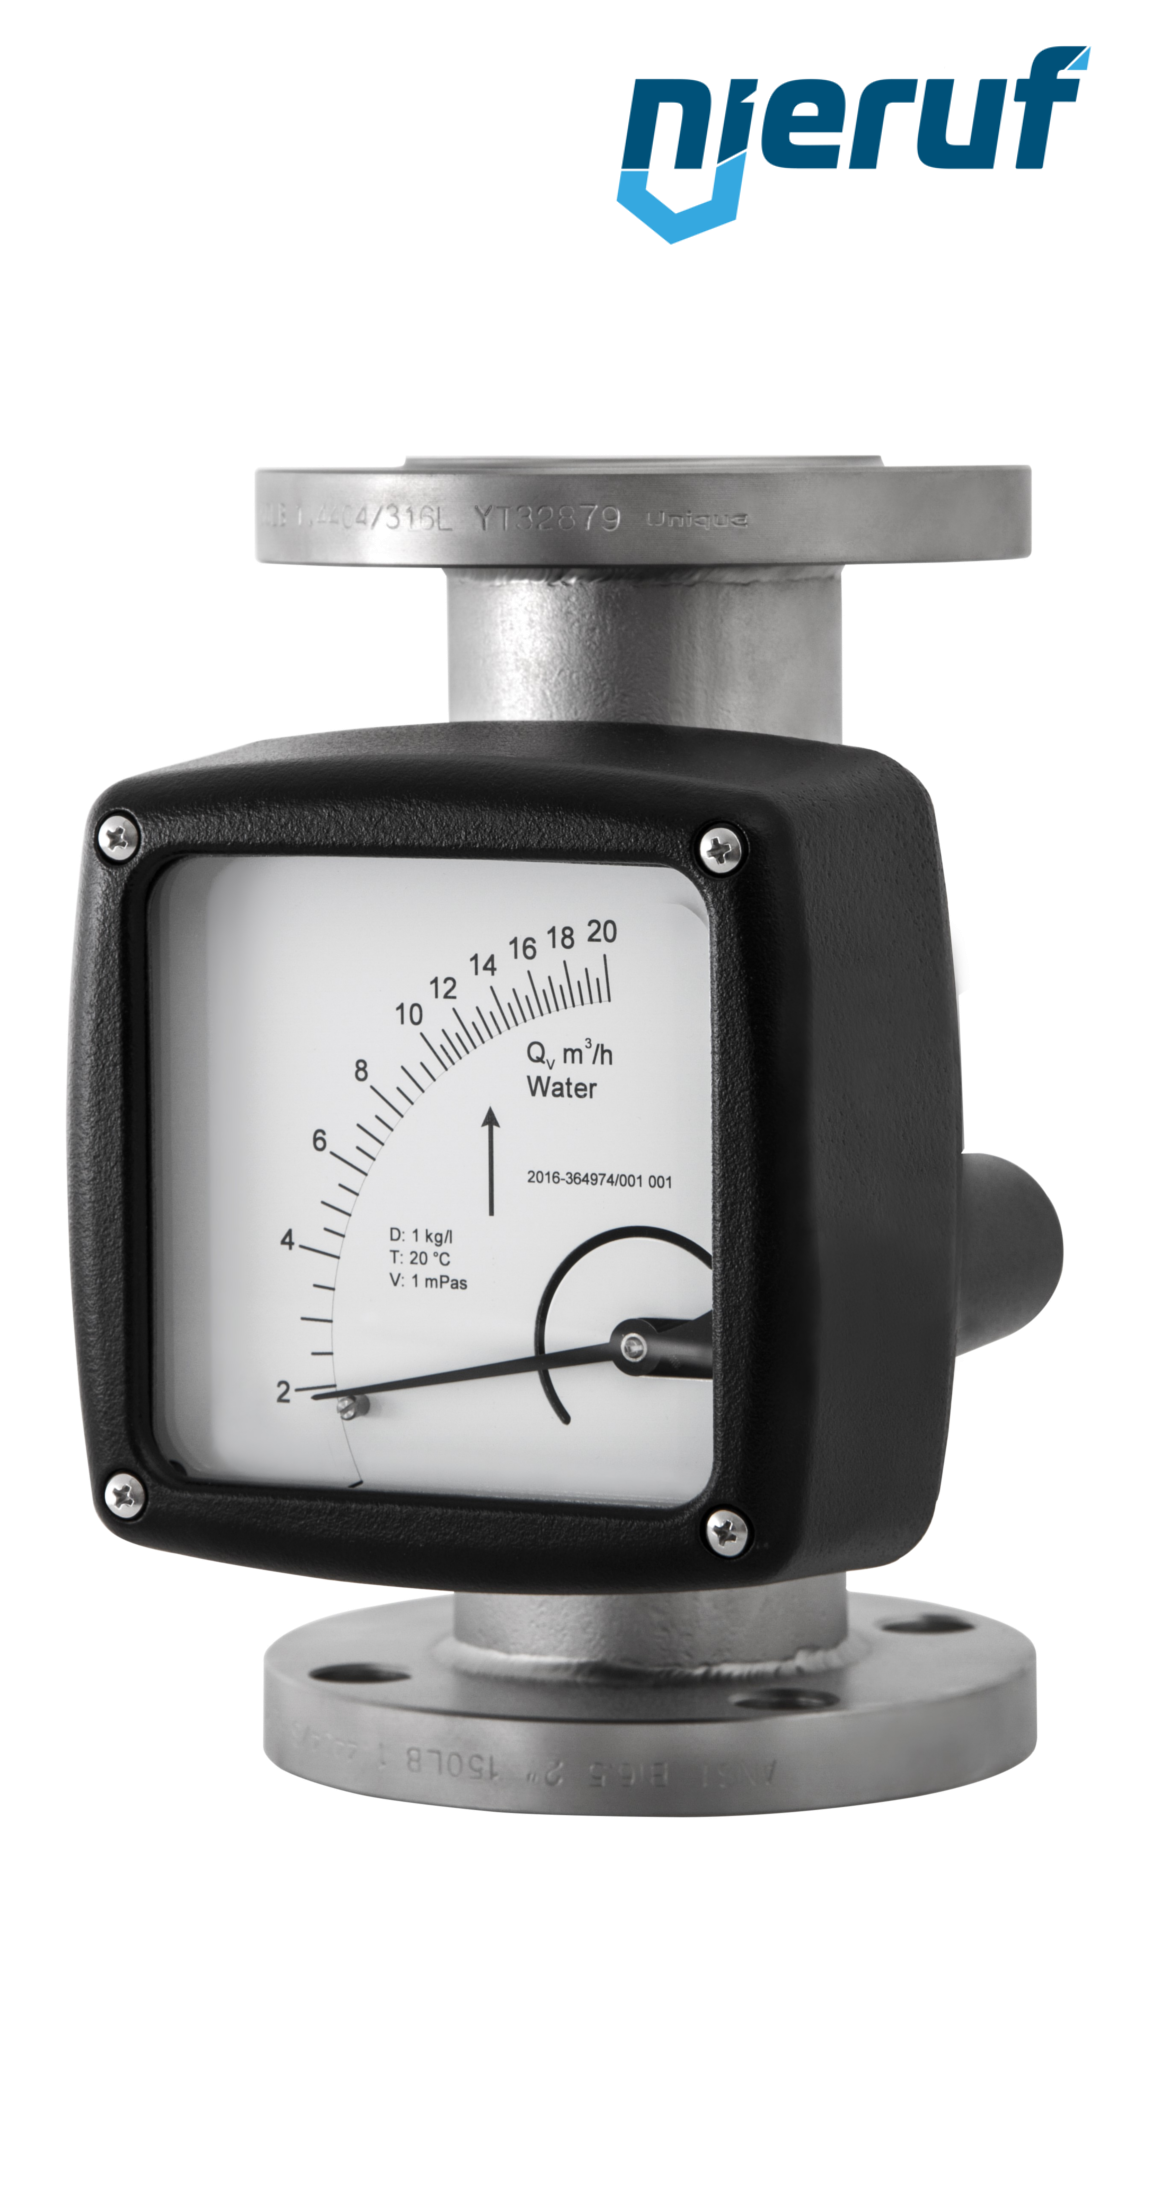 misuratore di portata / flussometro flangiato DN125-attacco 240,0 - 2400,0 m3/h tubo DN100 aria